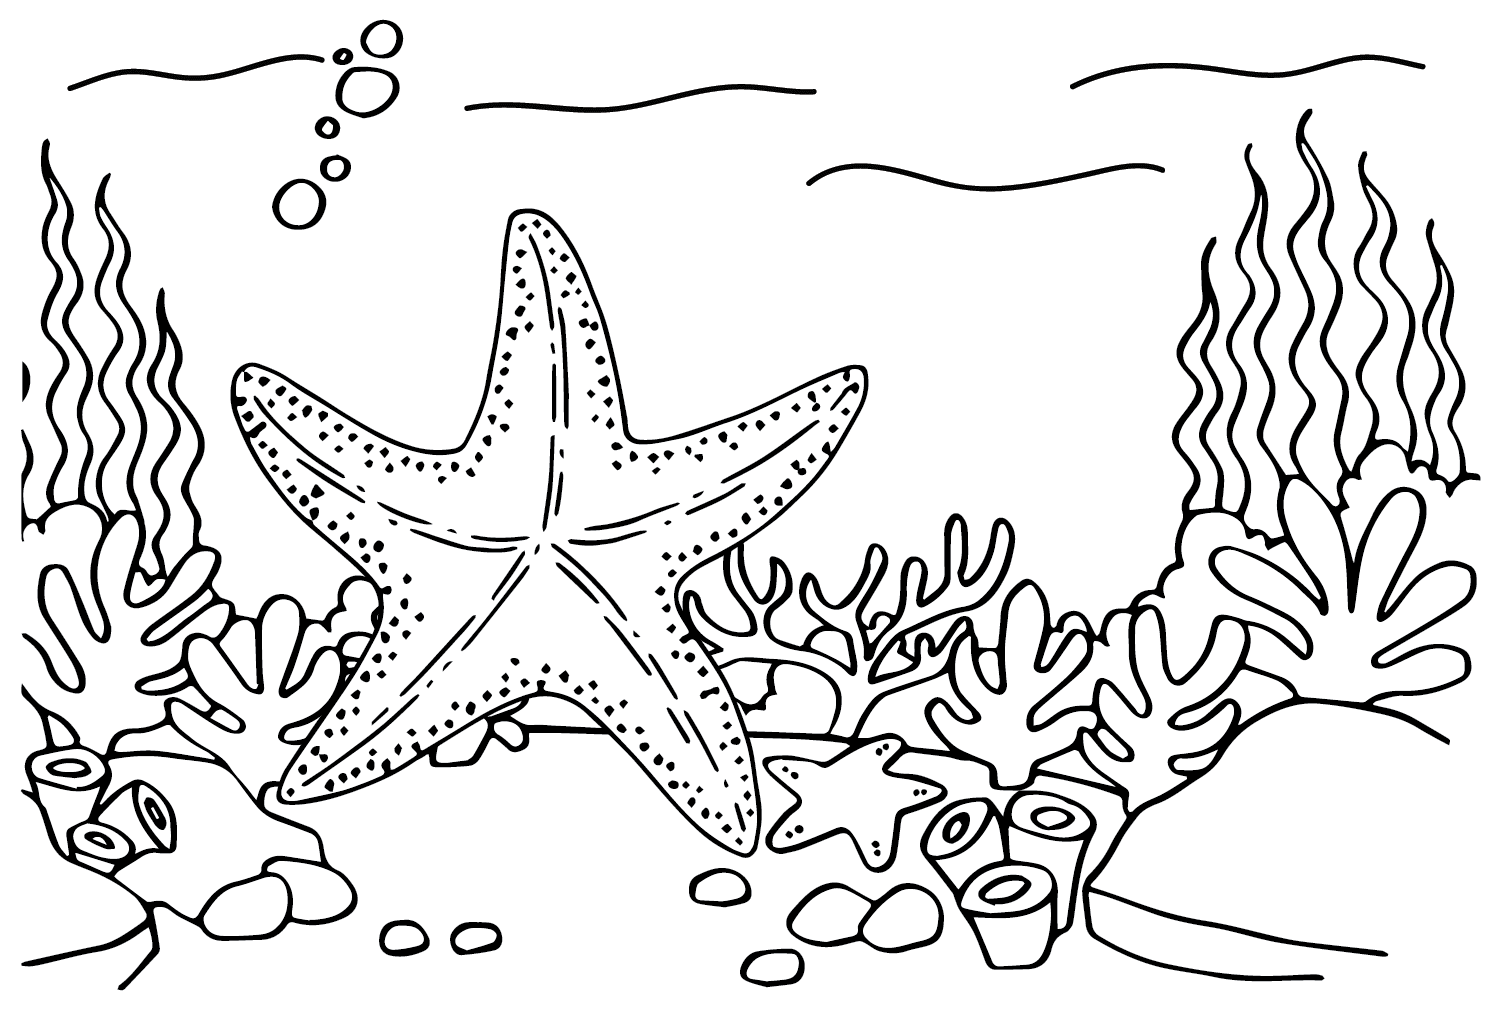 Starfish Free from Starfish